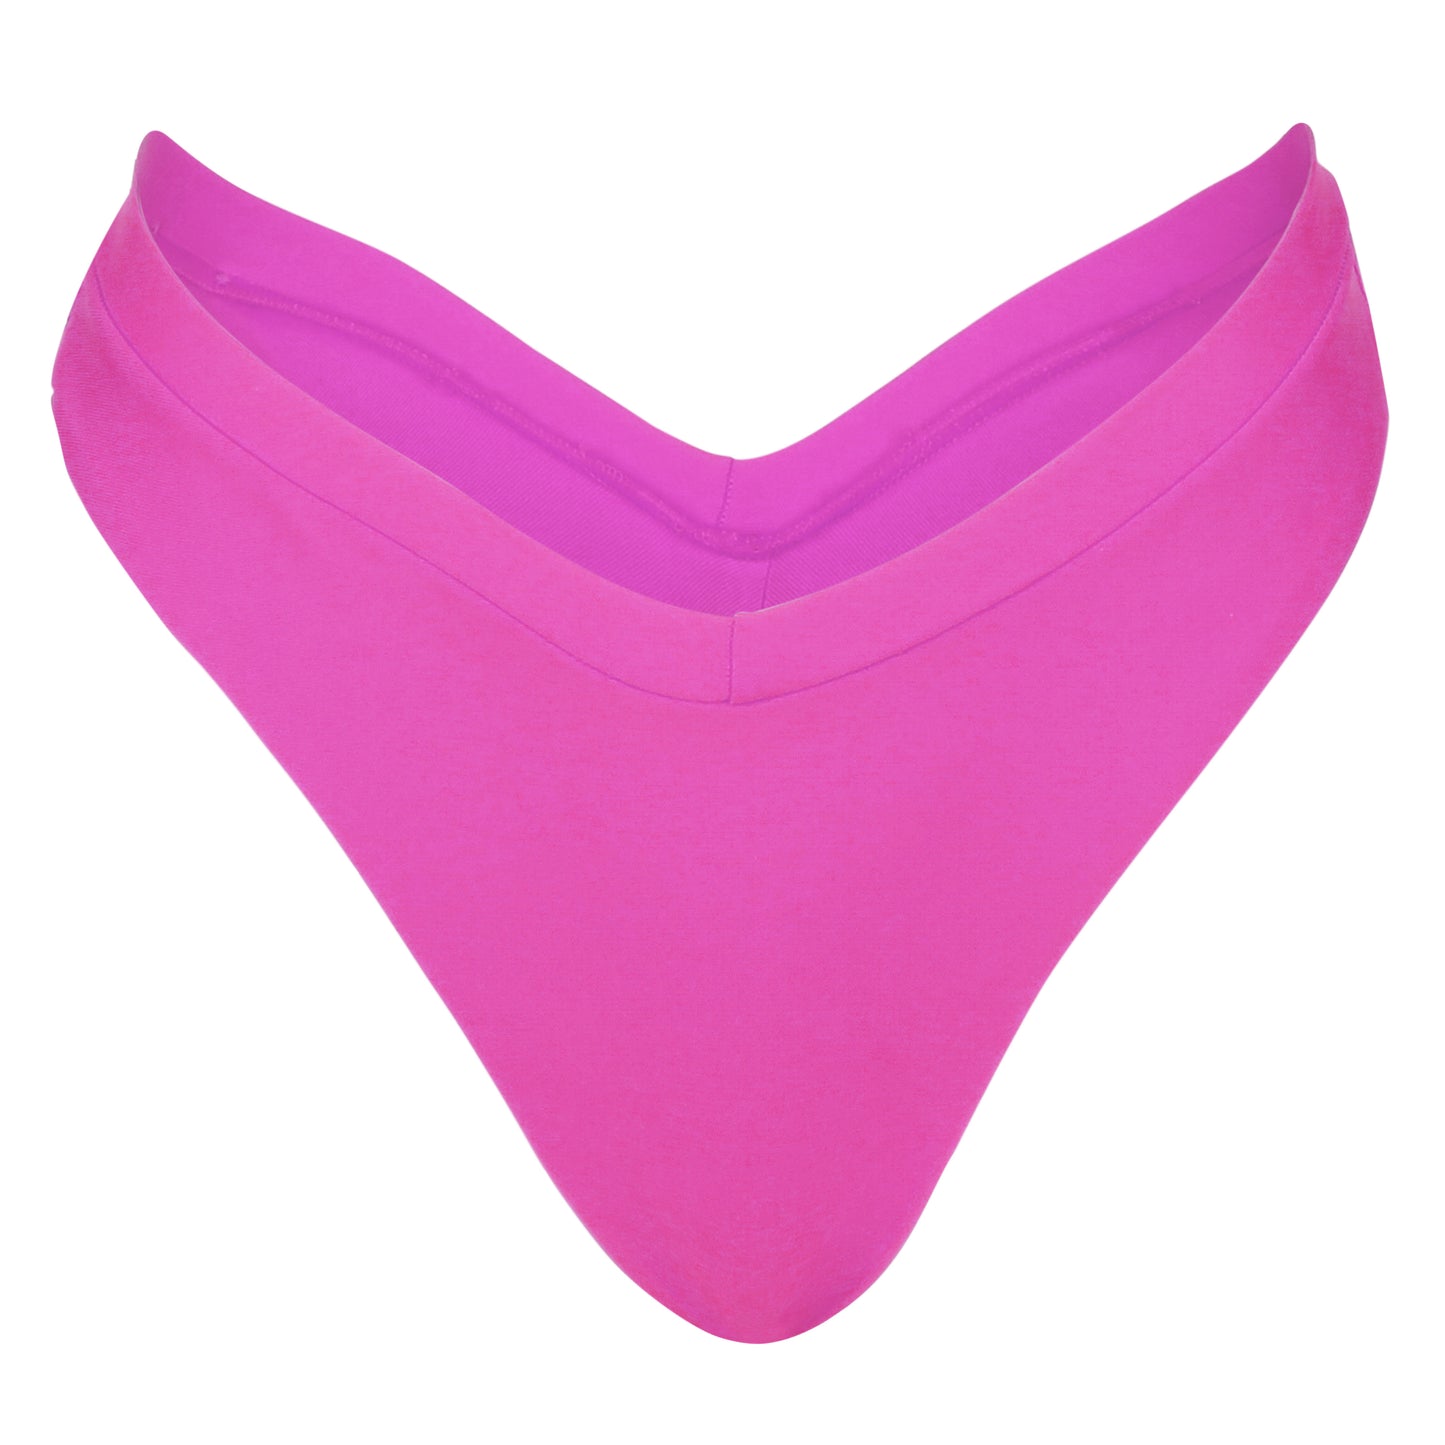 The Nice Bikini Bottom in Pink